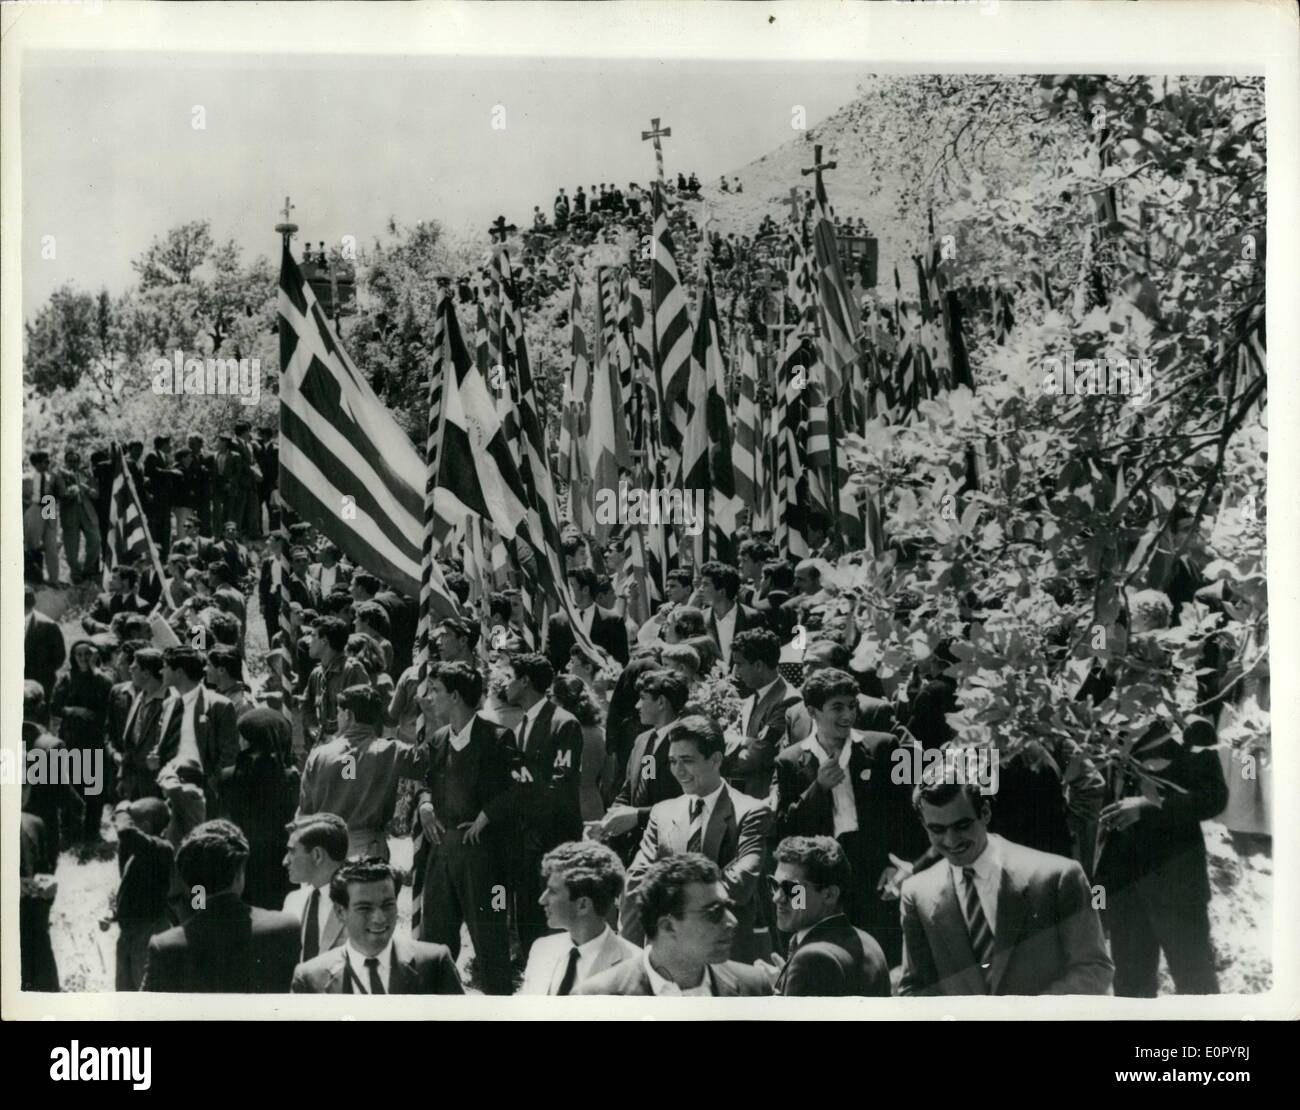 05 mai 1957 - Au service d'exécuté des milliers de Chypriotes turcs. Assister à : des milliers de personnes de toutes les parties de l'Île veulent le cimetière au village de Palehori, d'assister à un service le dimanche à la mémoire de tous exécutés. Cyprict les corneilles menées drapeaux et photos de l'exécution. après le service, les troupes britanniques sont intervenues et ont dispersé la foule. La photo montre la foule portant des drapeaux, vu comme ils l'Marohe au commentaire d'assister le service. Banque D'Images